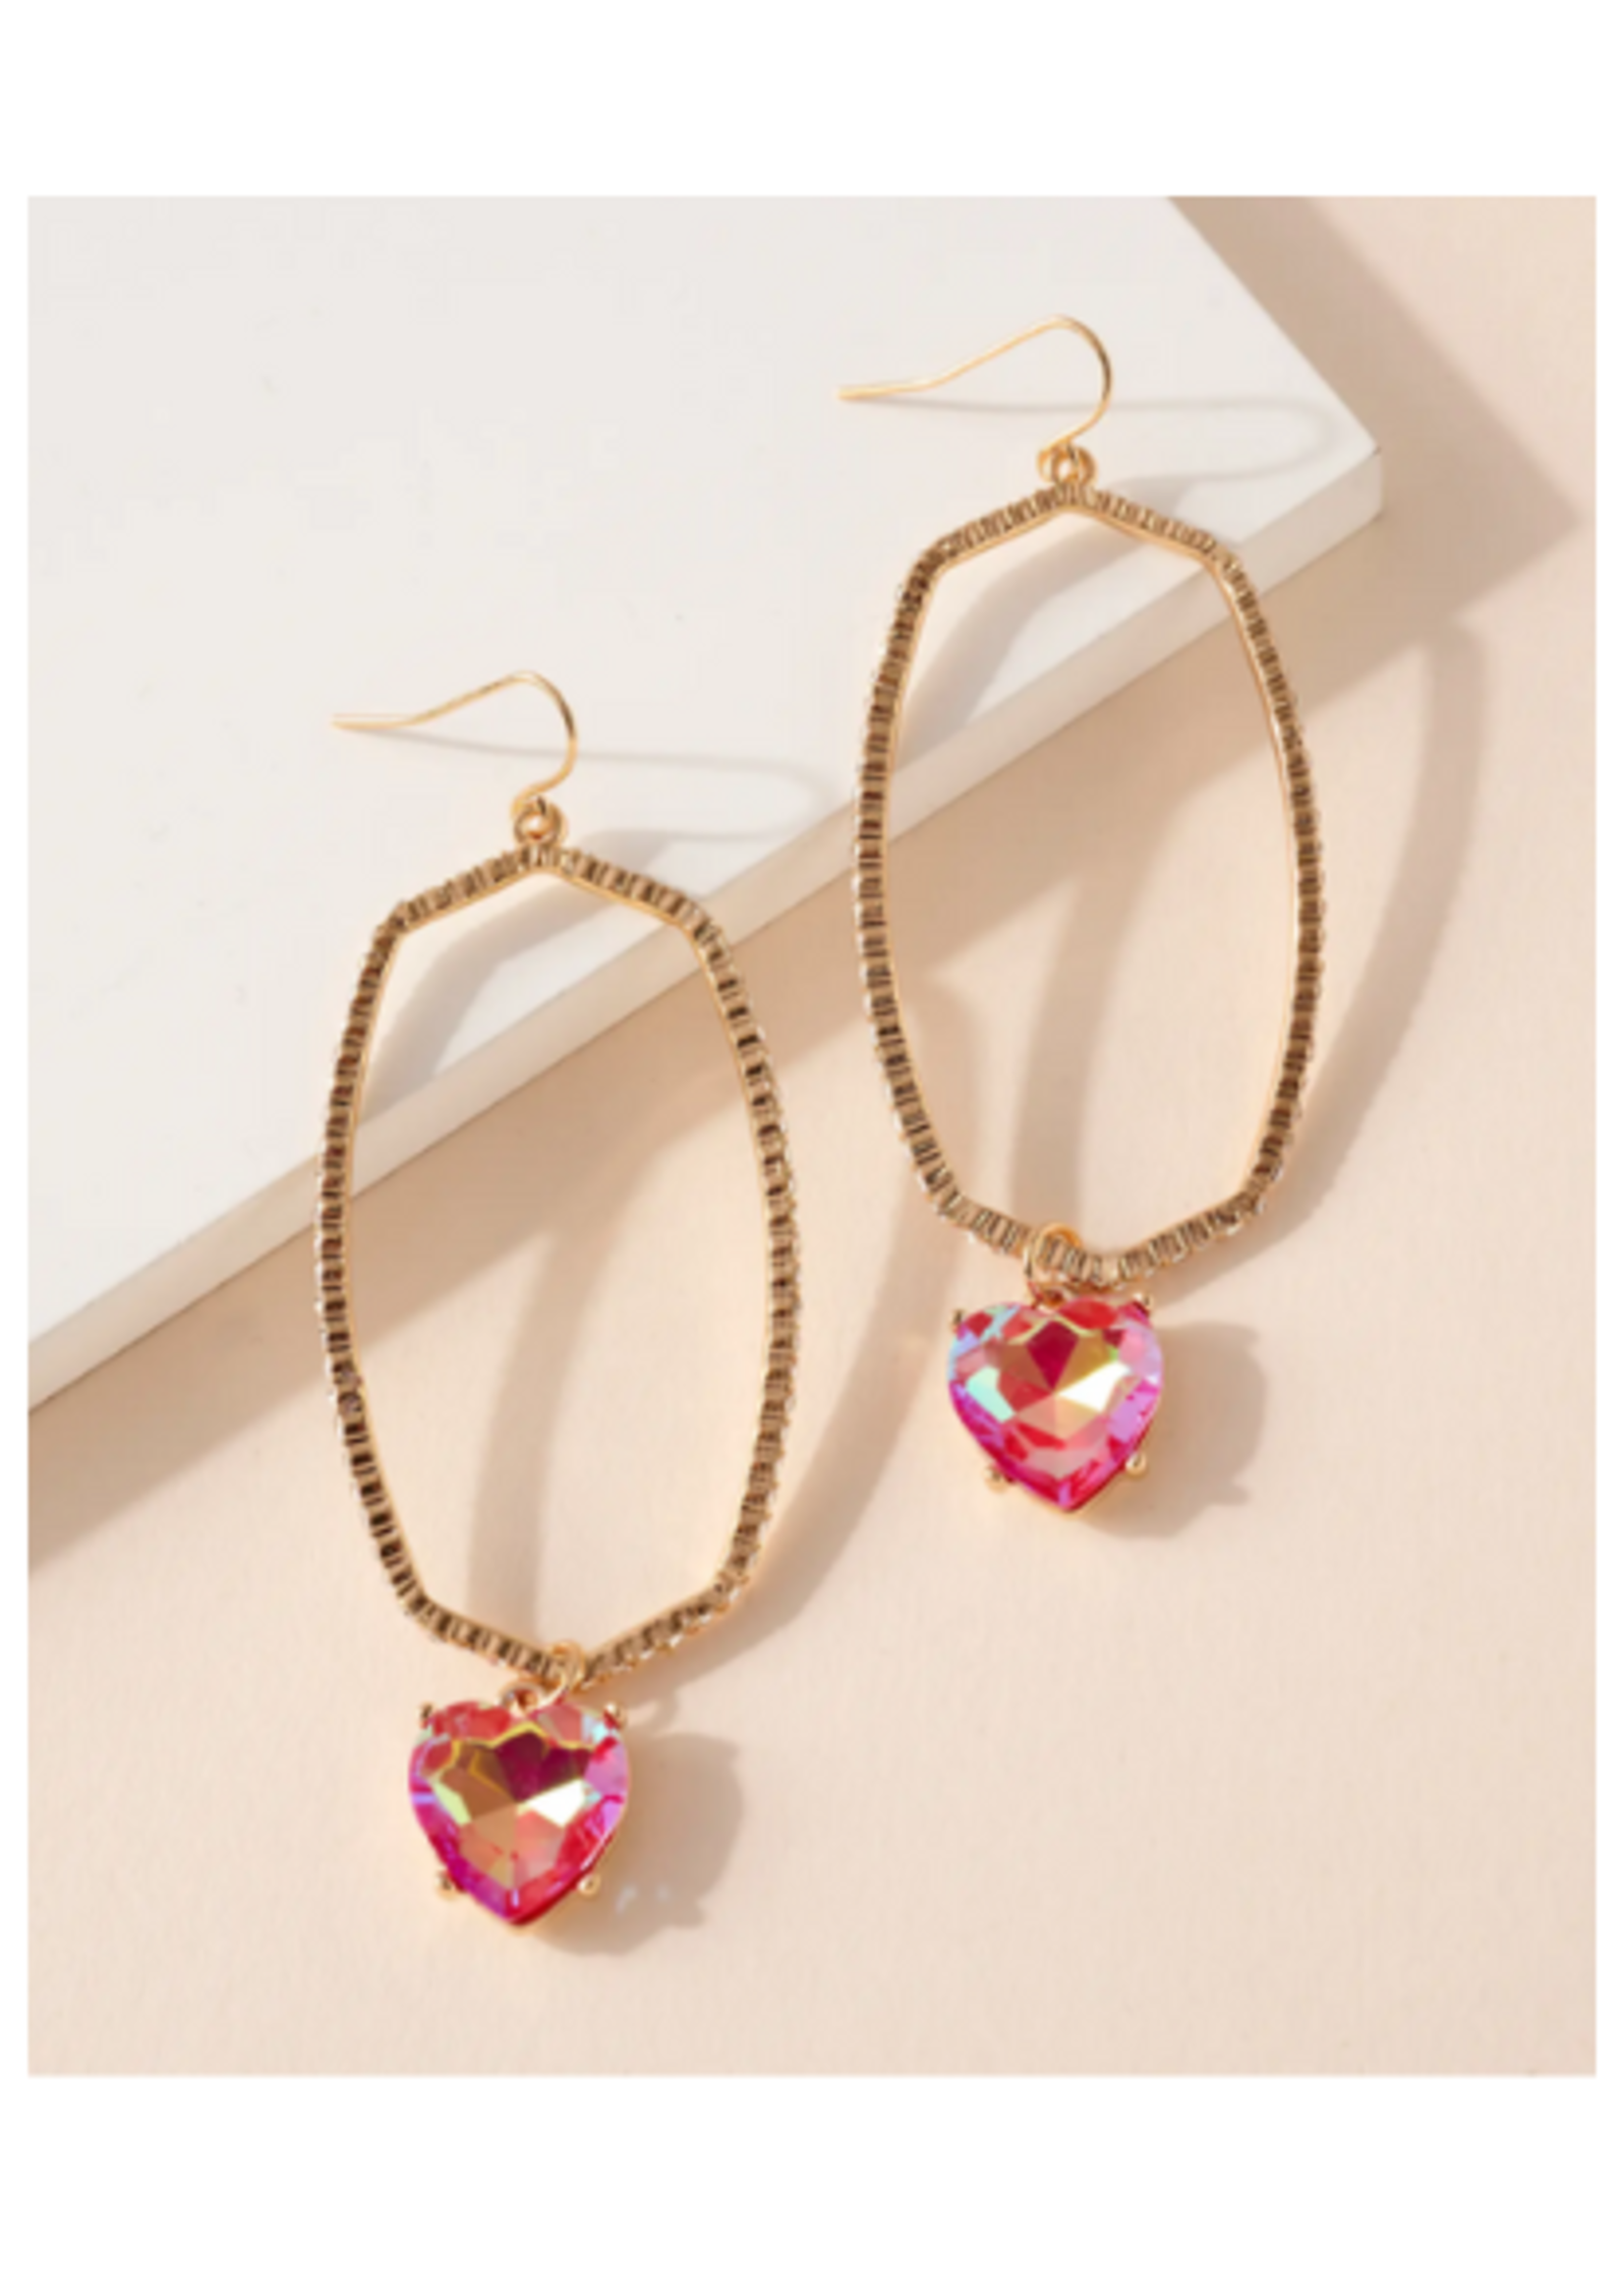 Heart Rhinestone Oval Earrings - Pink